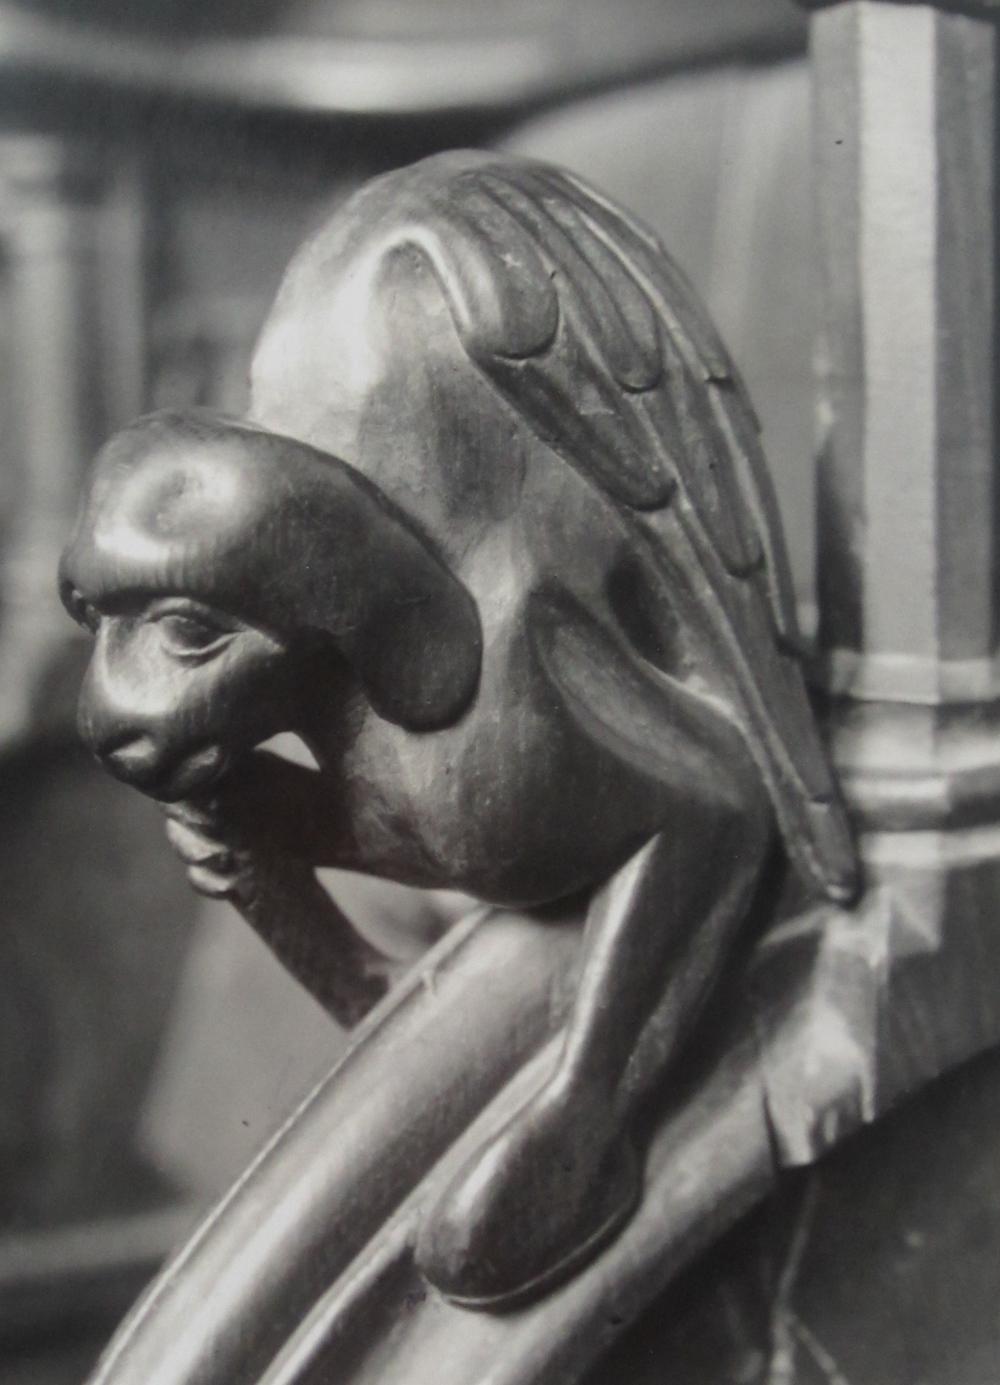 Albert Renger-Patzsch Figurative Photograph - Untitled - Gargoyle